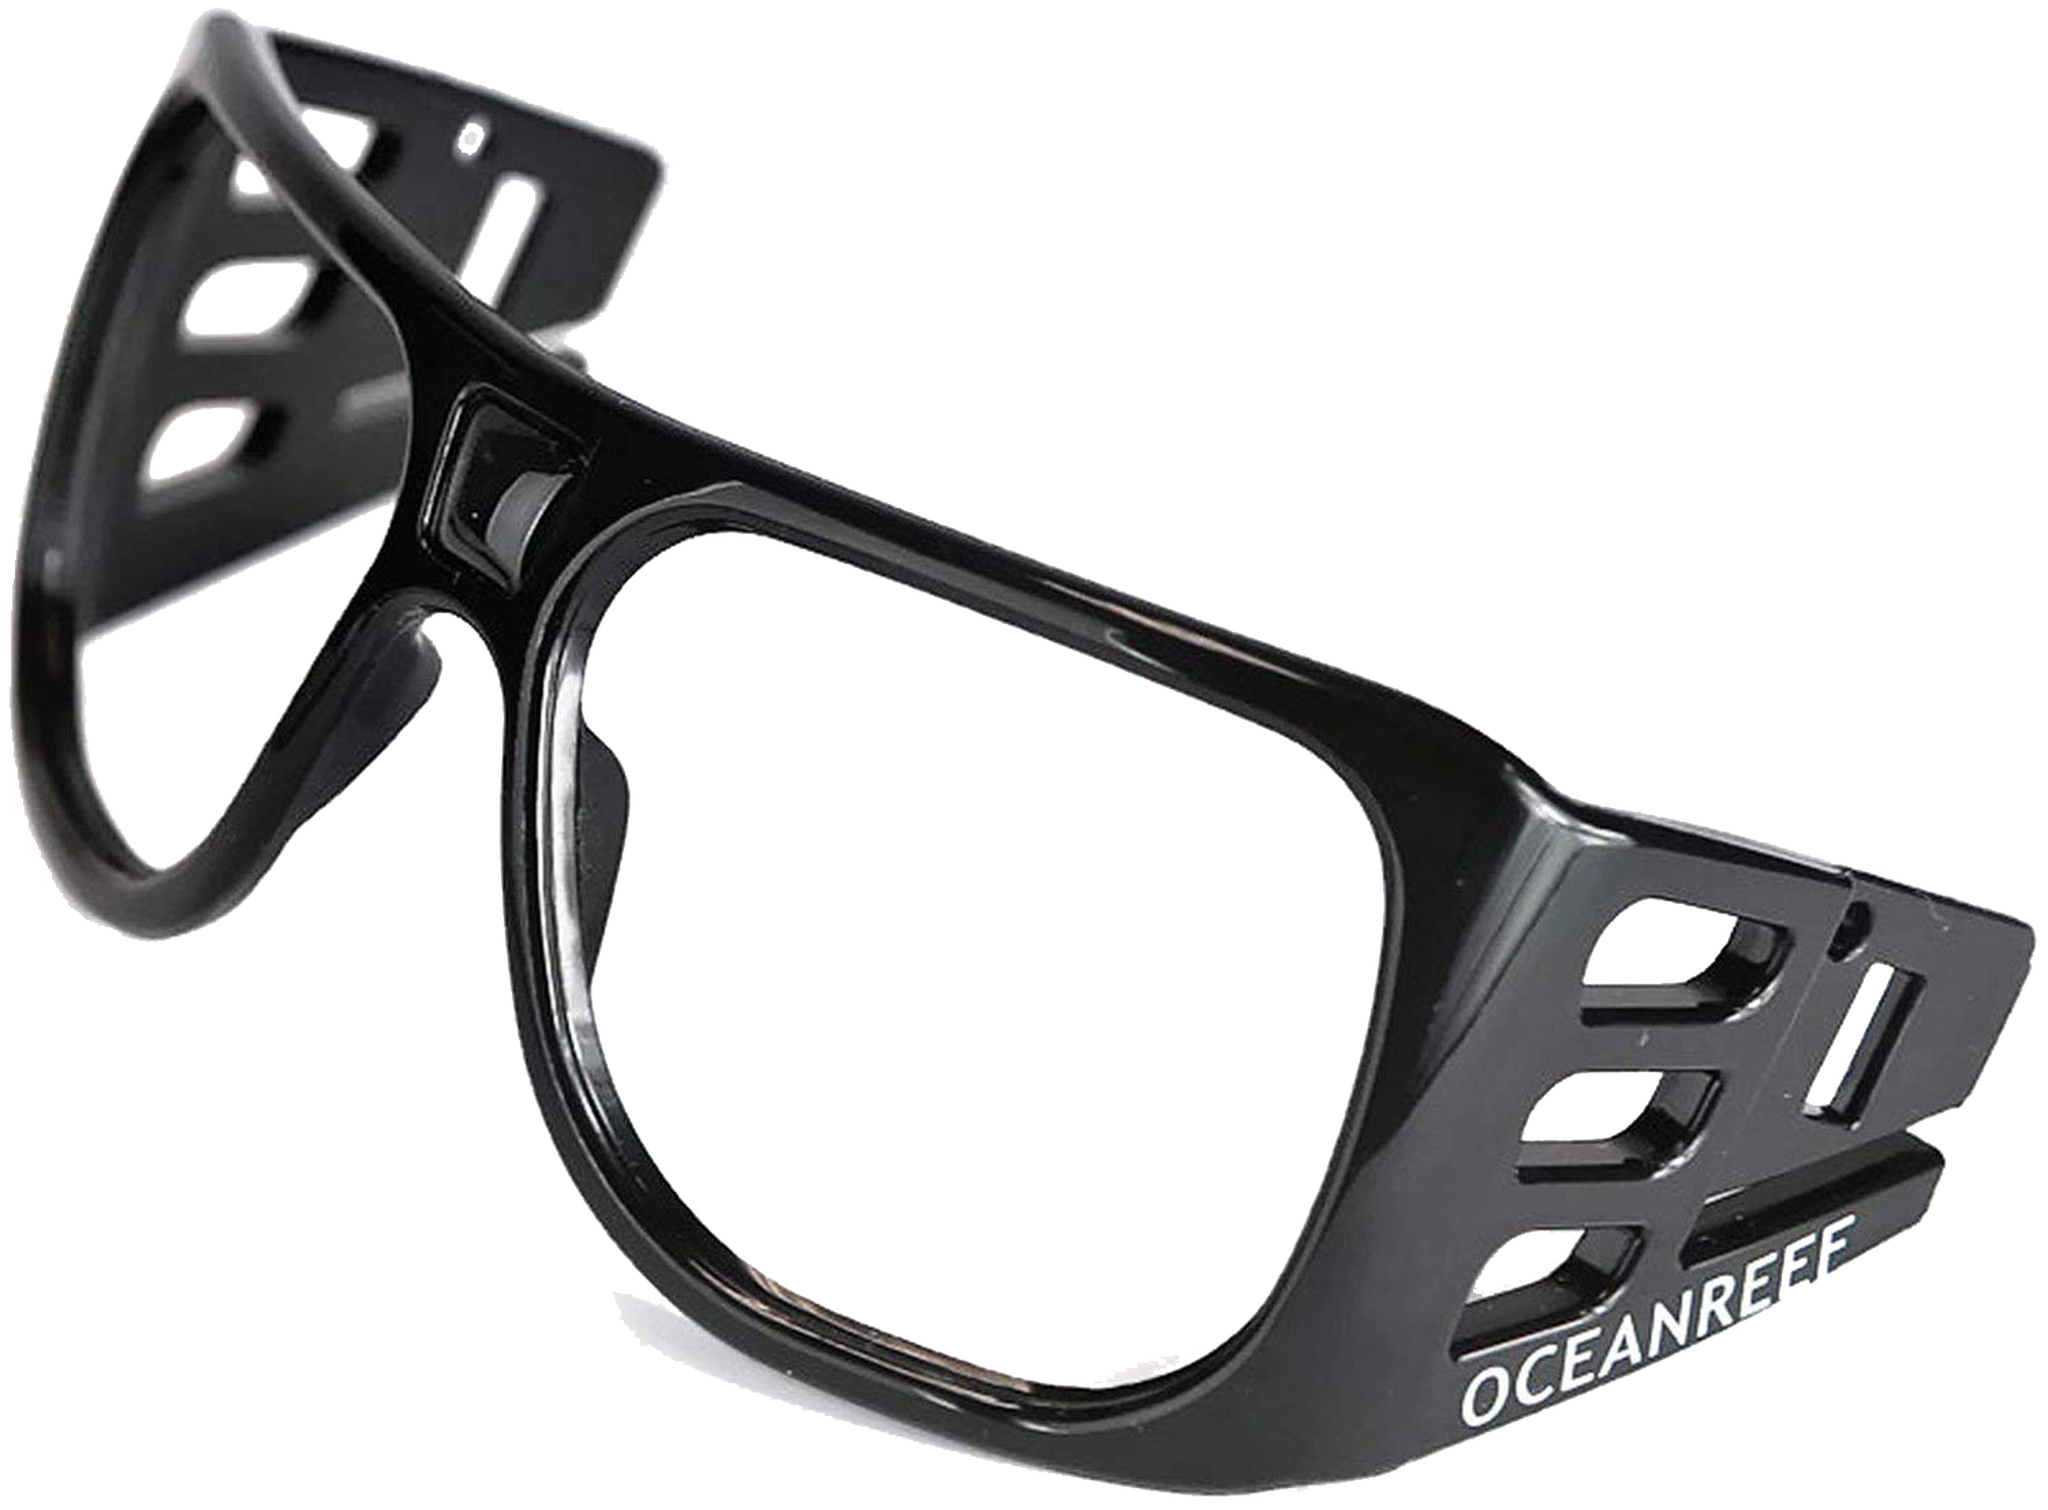 OCEAN REEF Optical Lens Support Black מסגרת לעדשות אופטיות למסכת שנירקול - דוגית